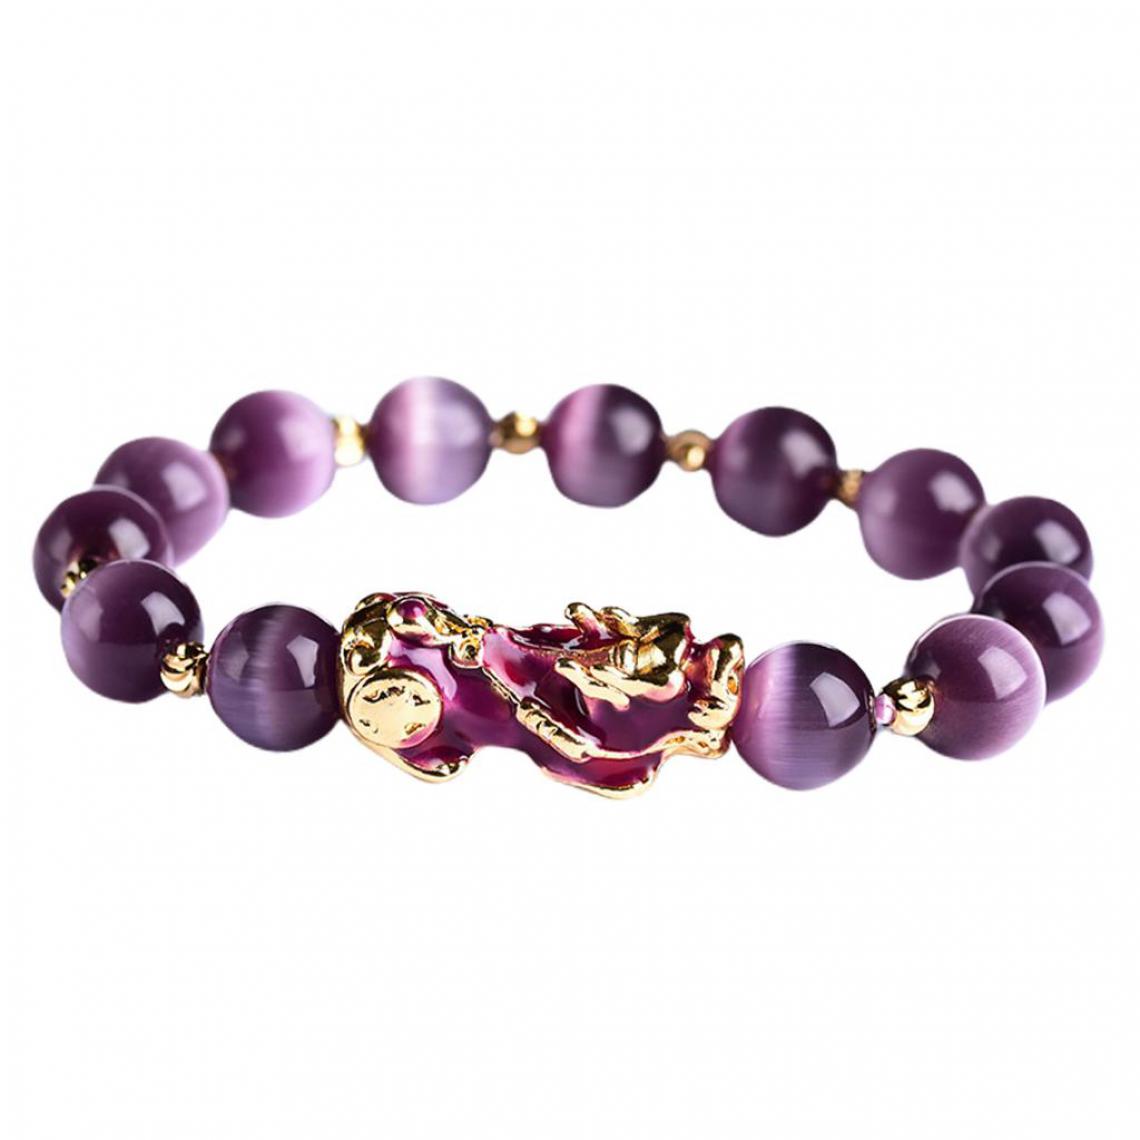 marque generique - Feng Shui Plaqué Pi Xiu Bracelets Femmes Hommes Élastique Bonne Chance Richesse Violet - Bracelet connecté